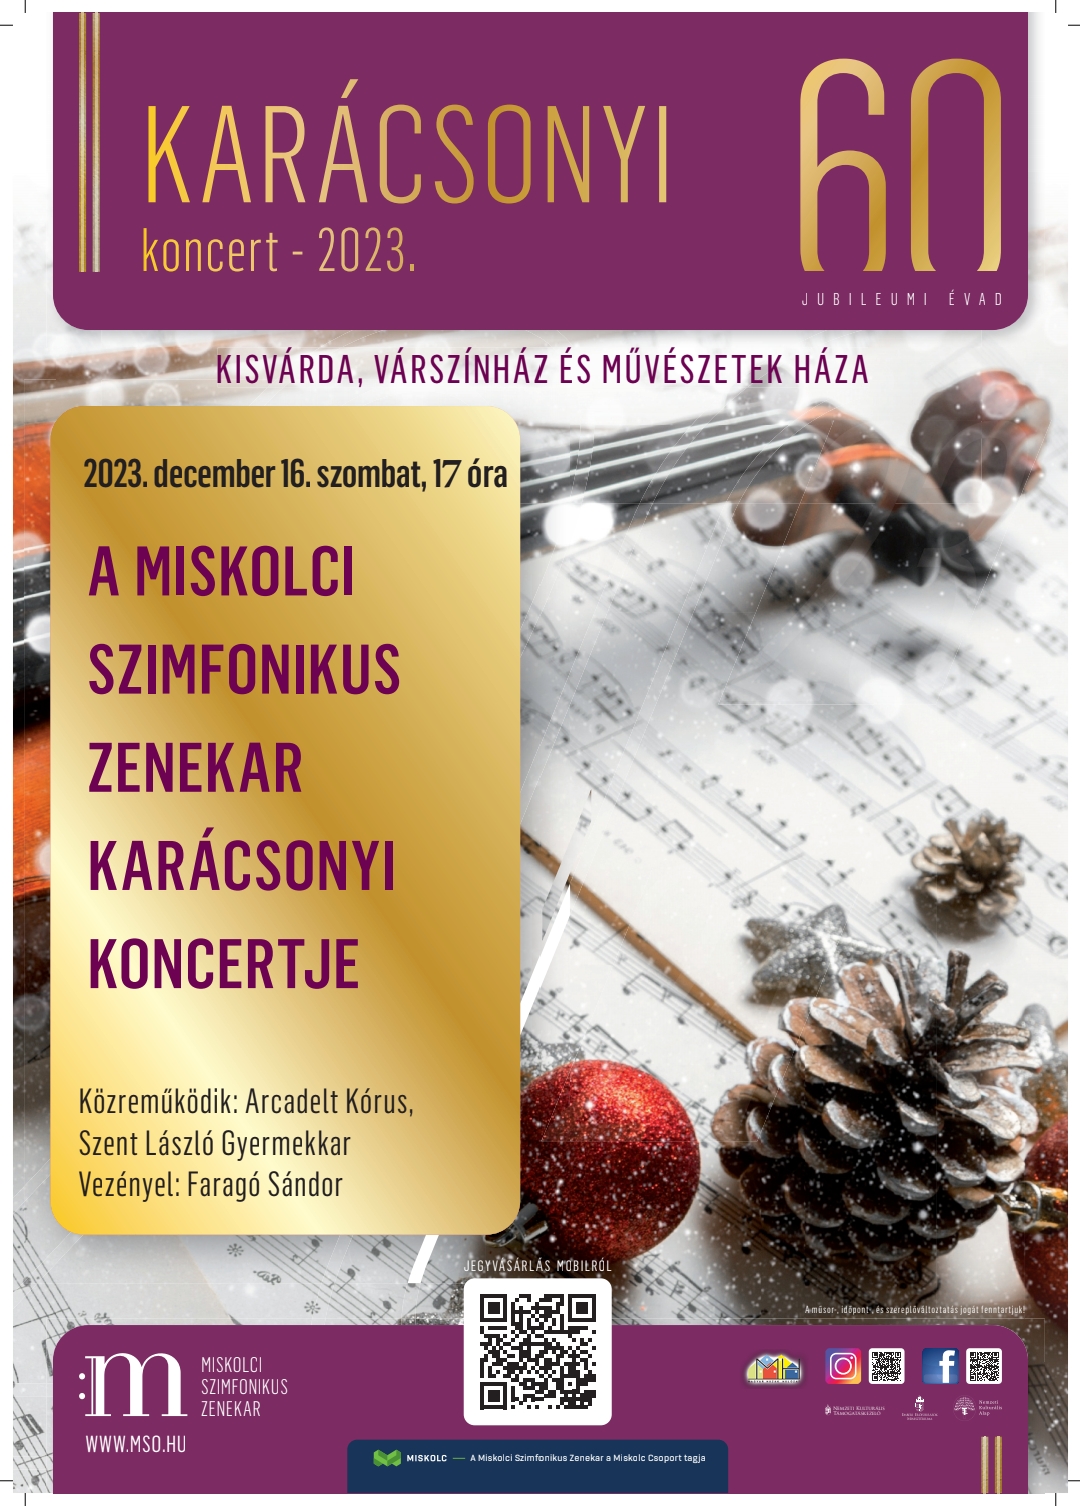 Karacsonyi Karacsonyi koncert plakat Kisvarda Magy 231212 121422